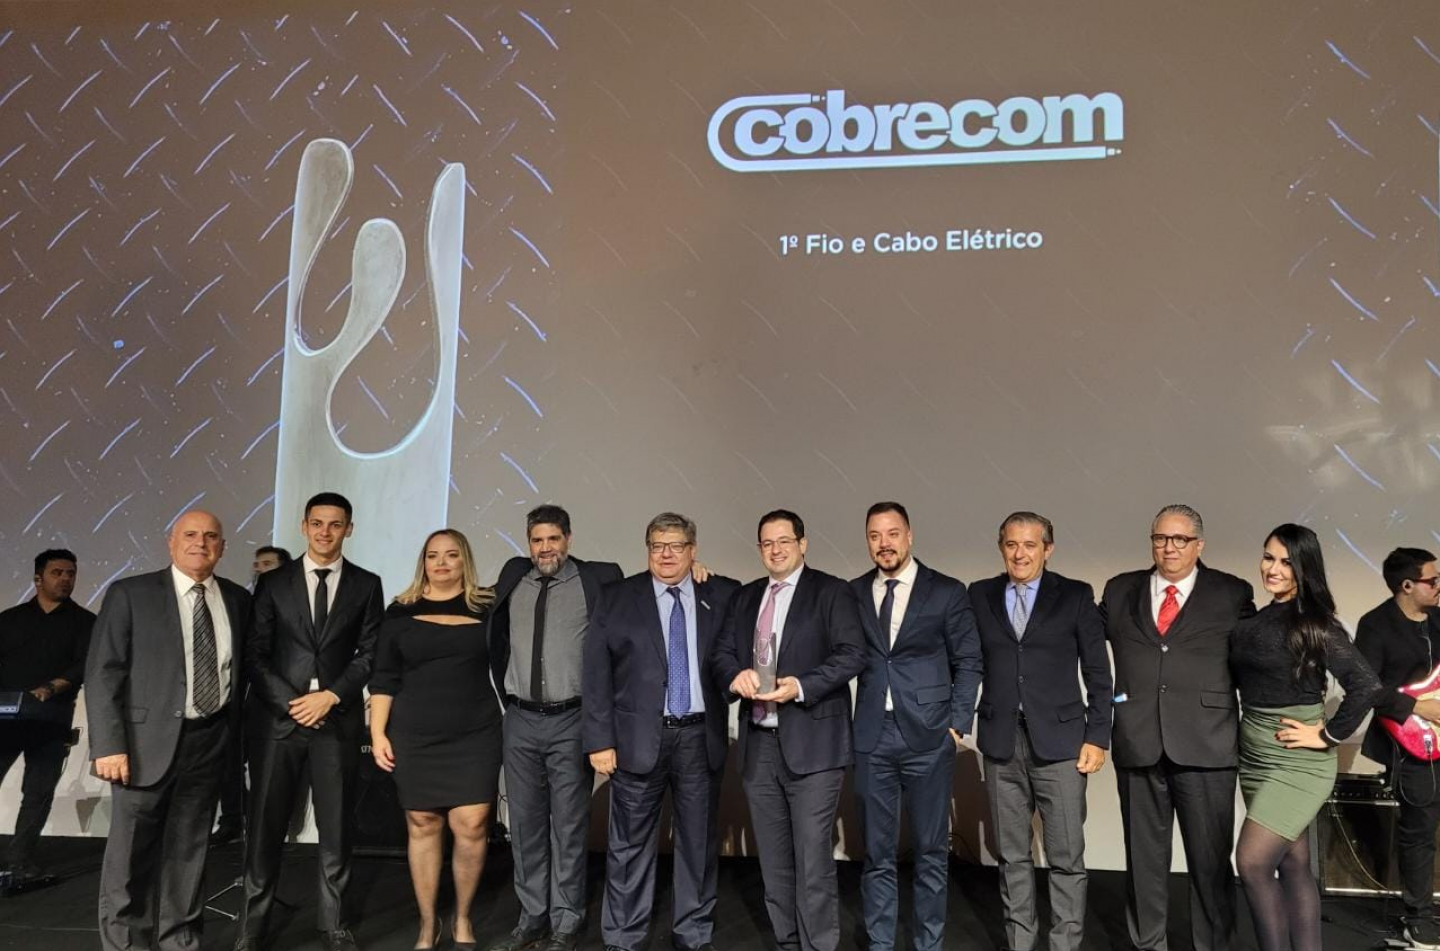 COBRECOM é Top Of Mind na Categoria Fios e Cabos Elétricos | Cobrecom